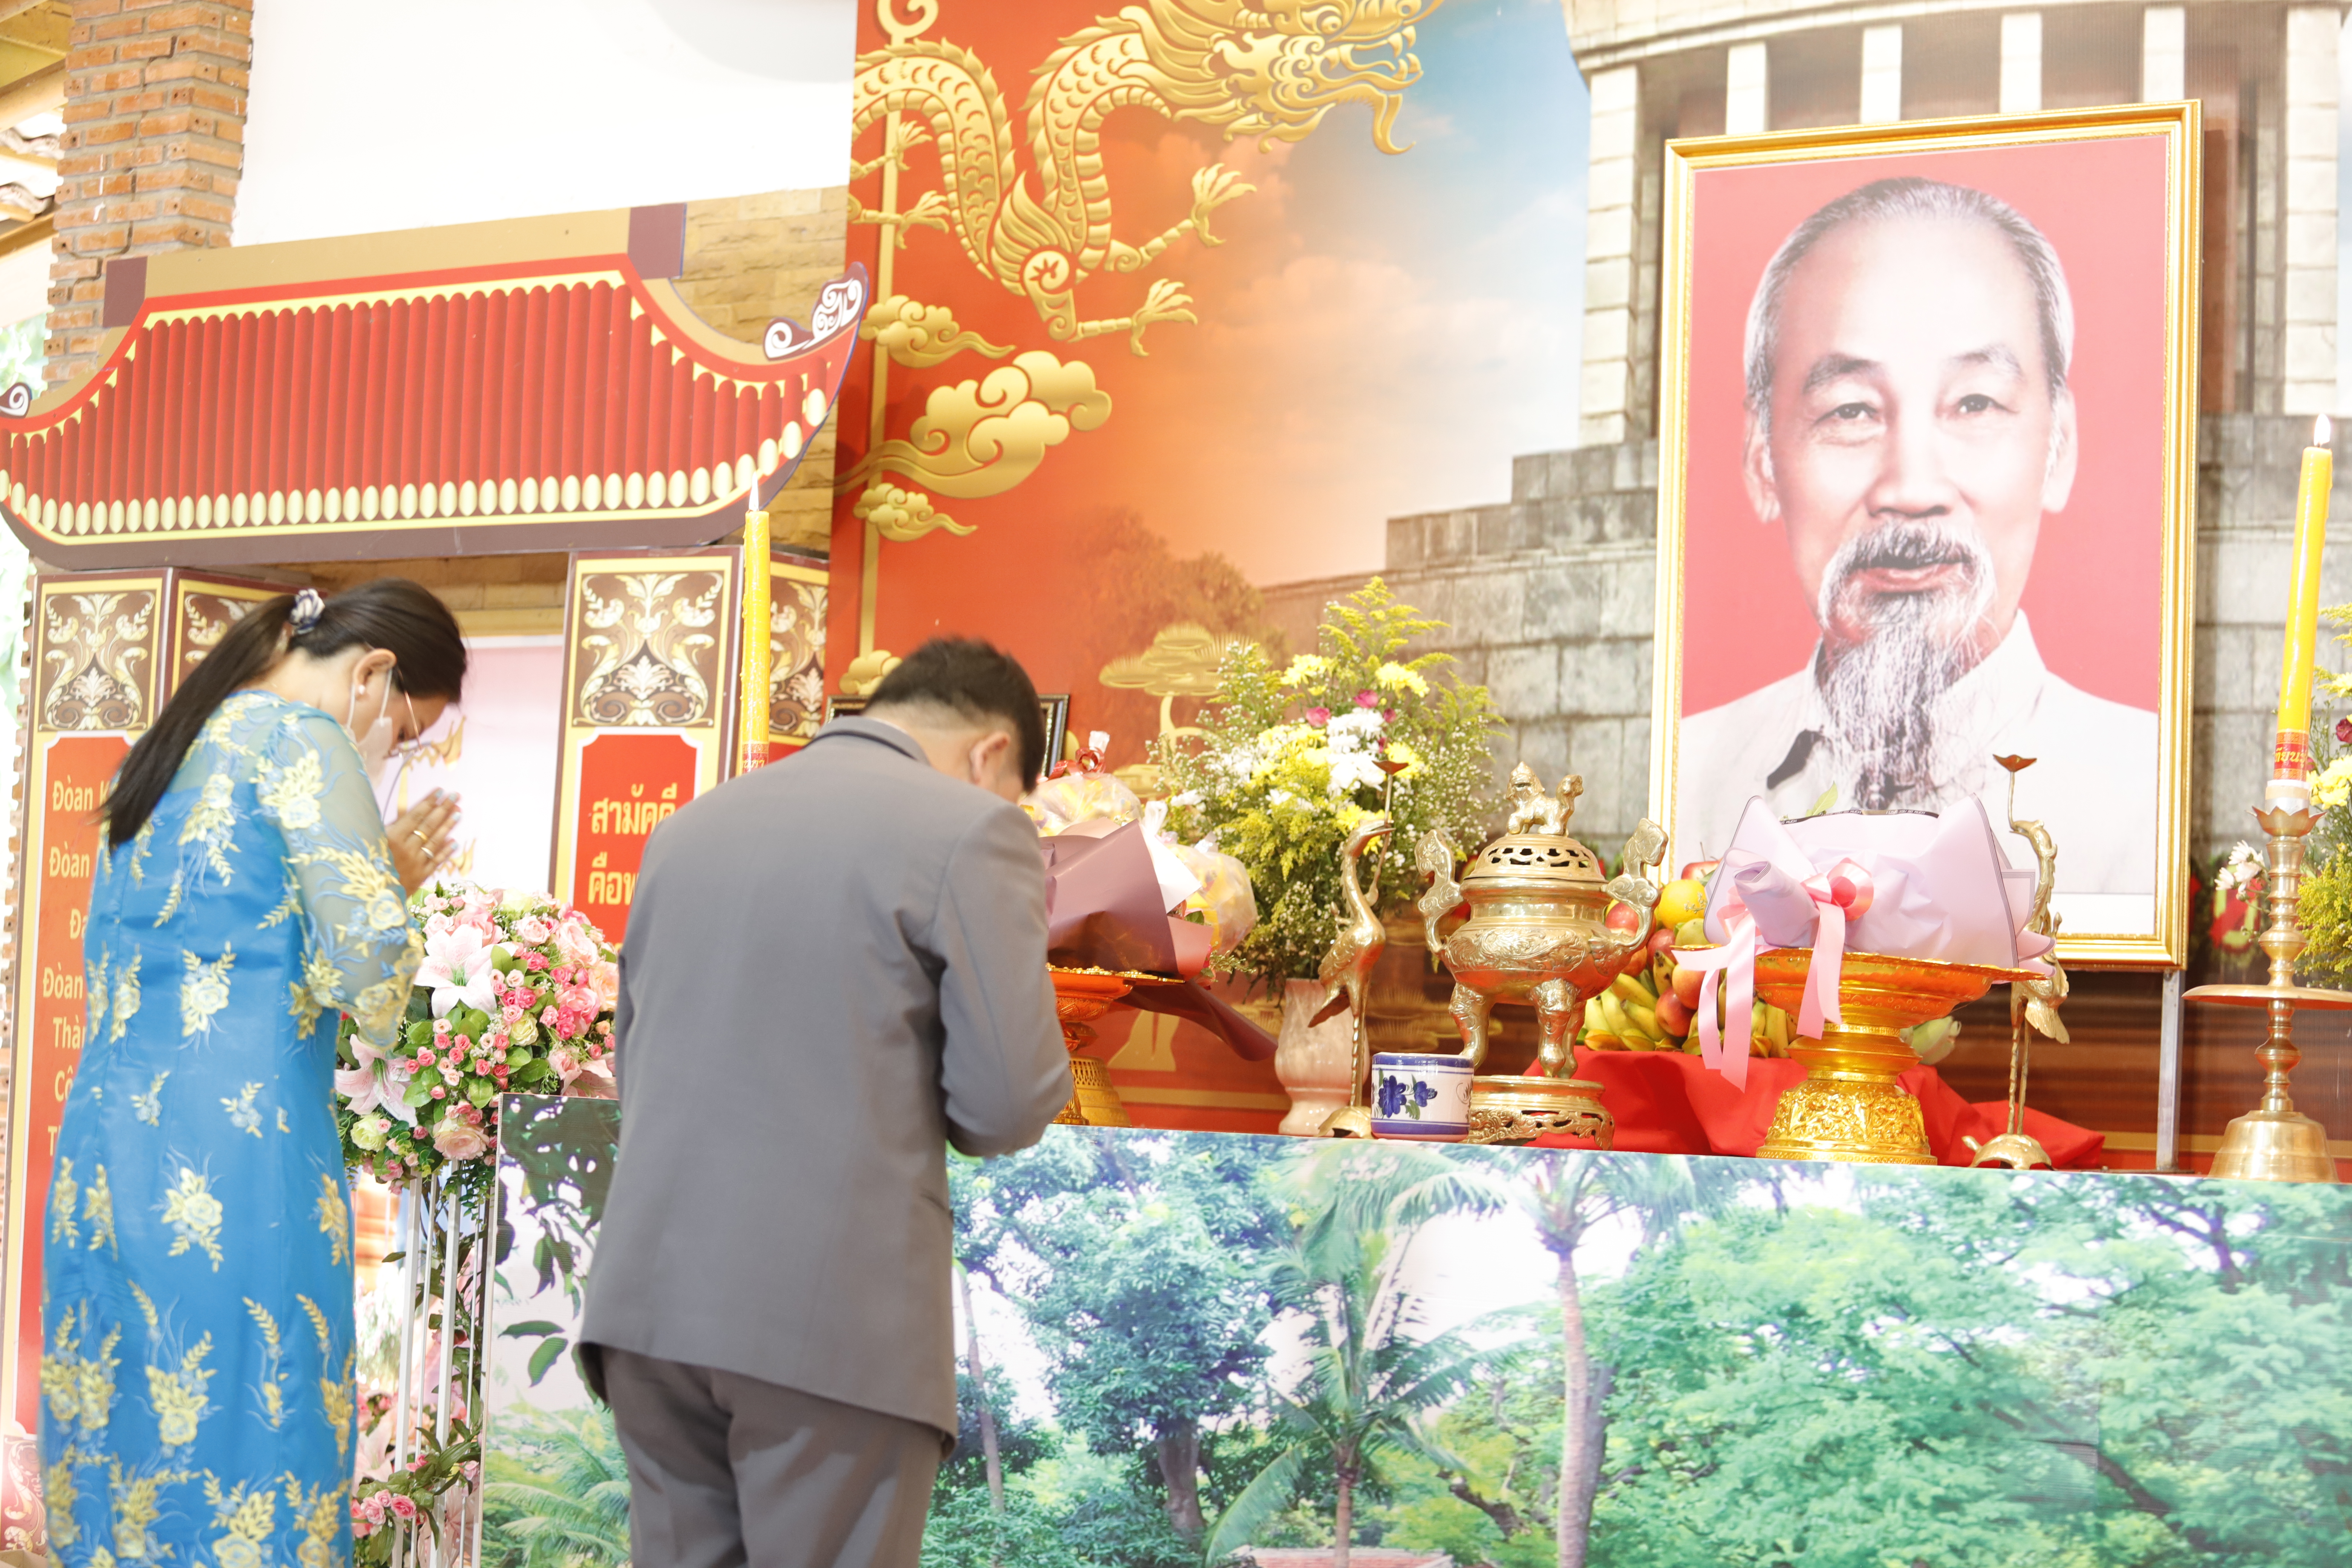 ม.นครพนมร่วมเป็นเกียรติในงานรำลึก 133 ปี วันคล้ายวันเกิดท่านประธานโฮจิมินห์และความสัมพันธ์มิตรภาพไทย - เวียดนาม ประจำปี 2566ม.